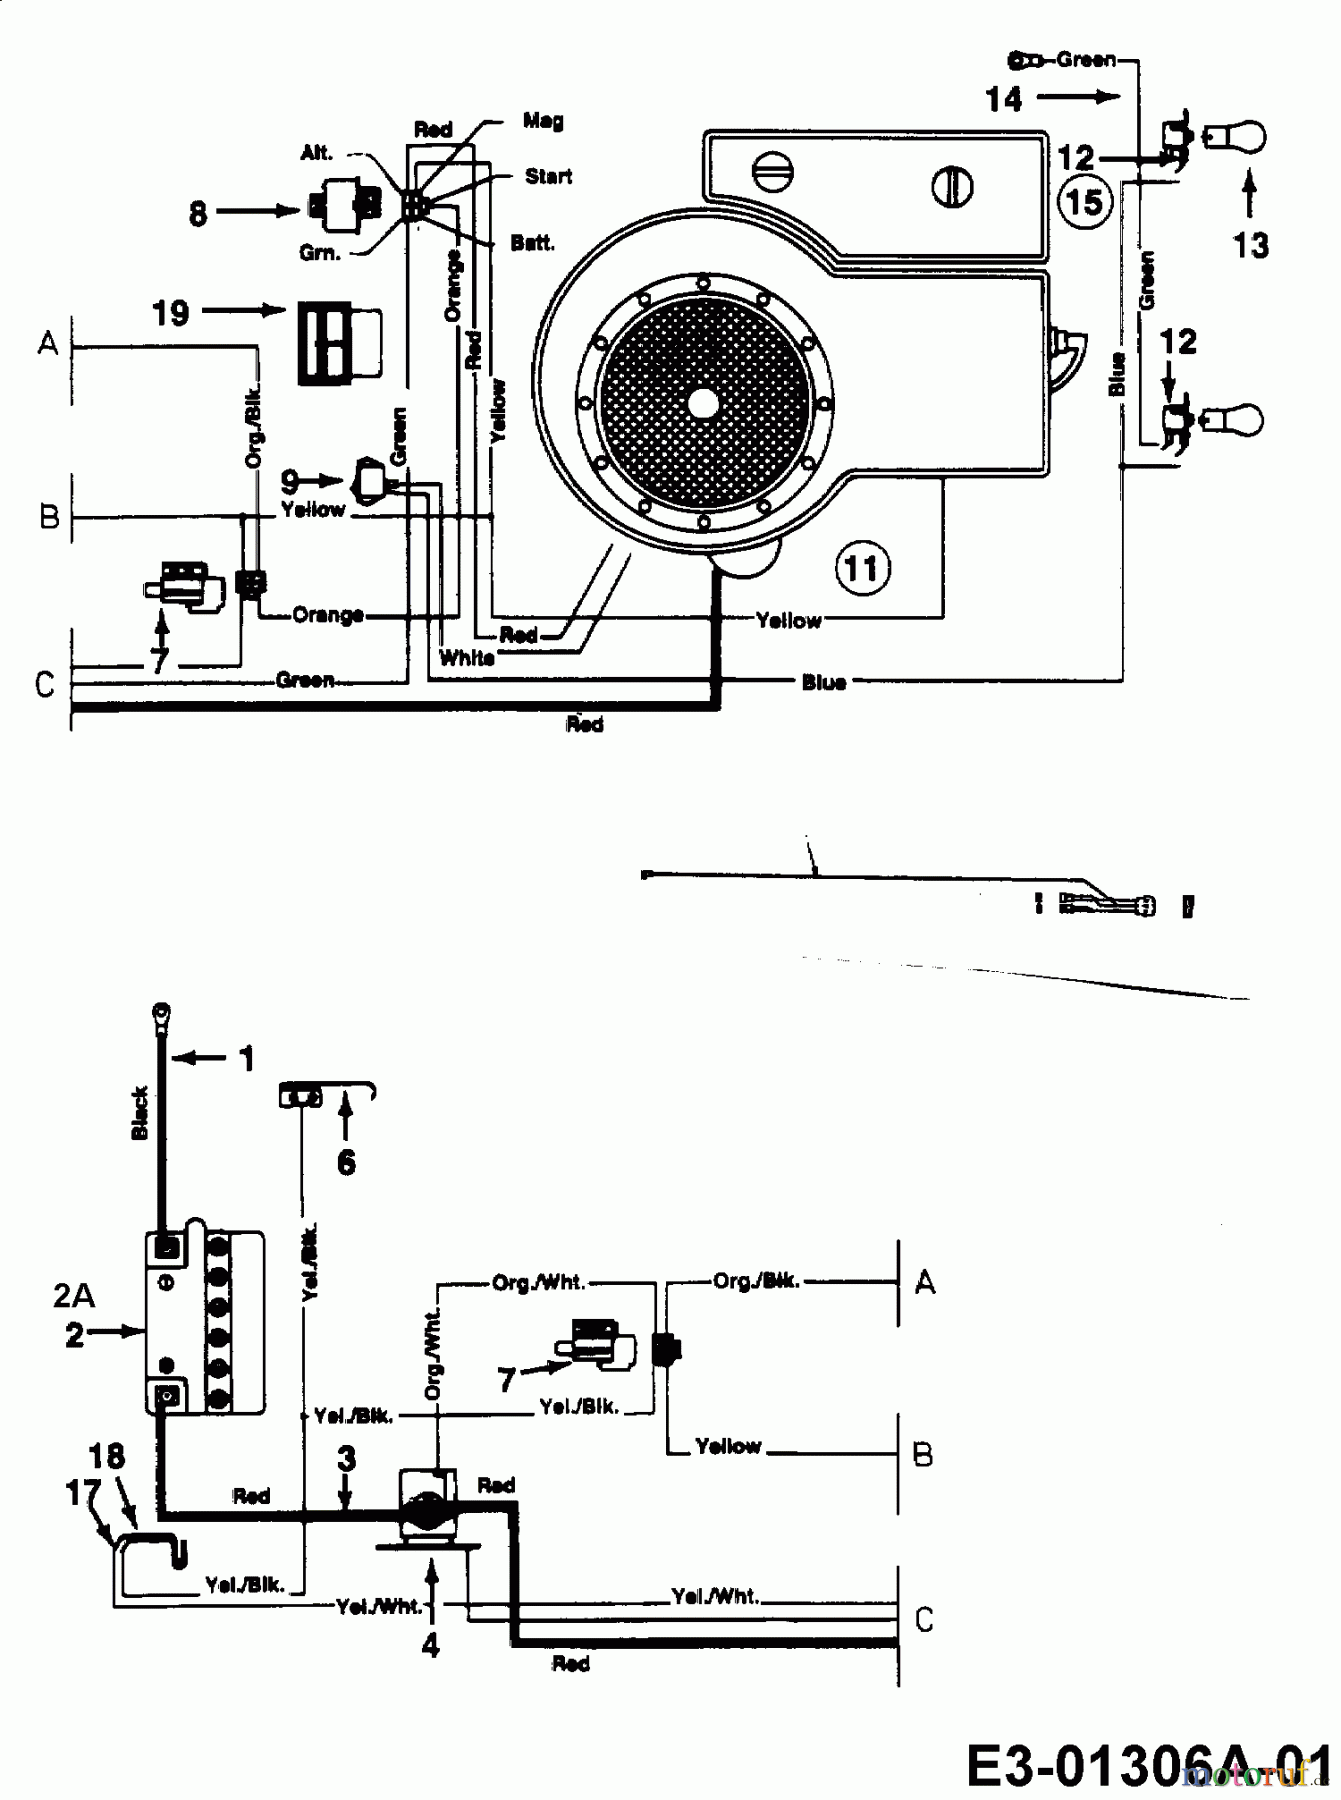  Fleurelle Tracteurs de pelouse AMH 1200 13A1452C619  (2003) Plan électrique cylindre simple